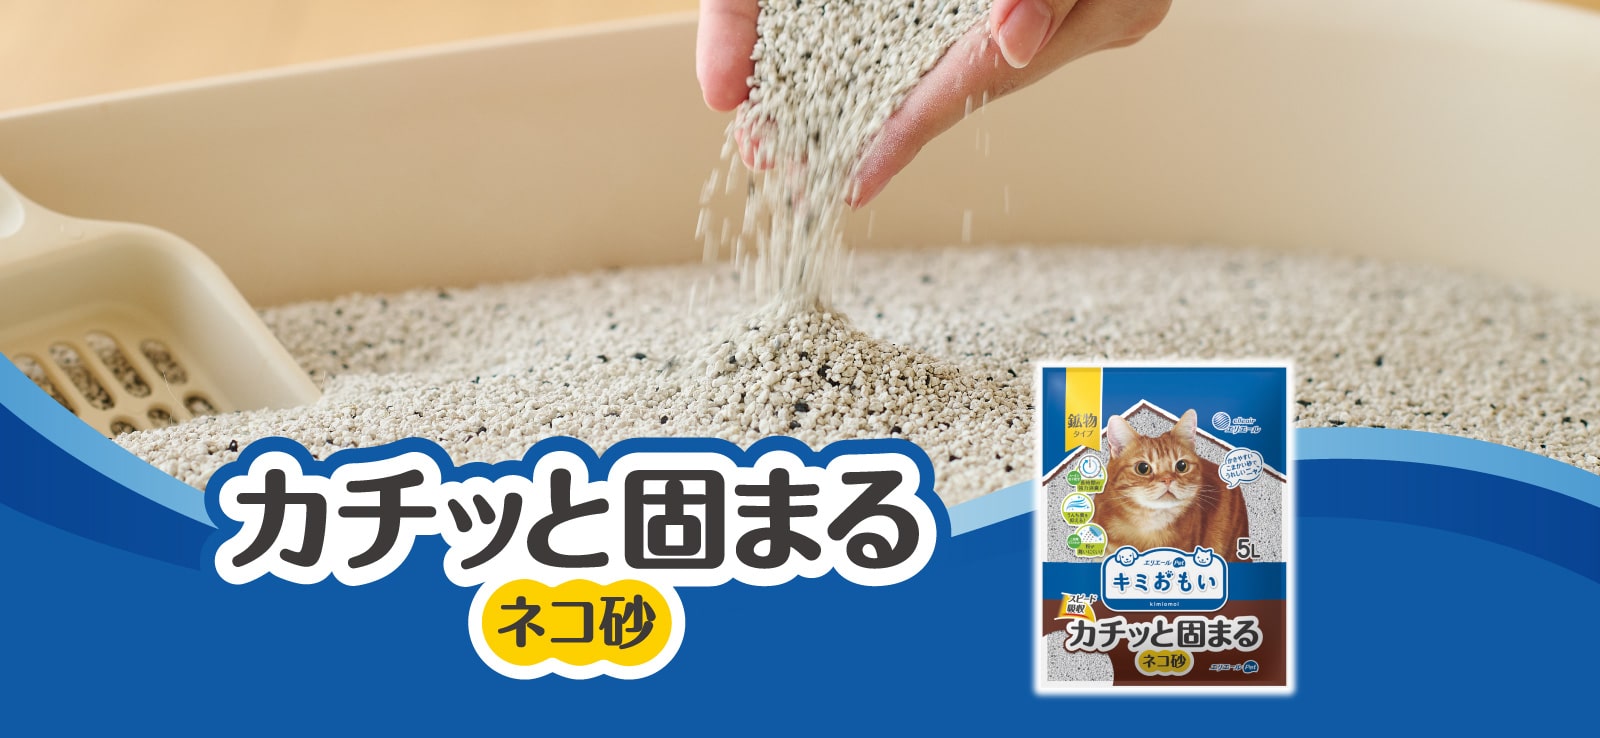 カチッと固まるネコ砂